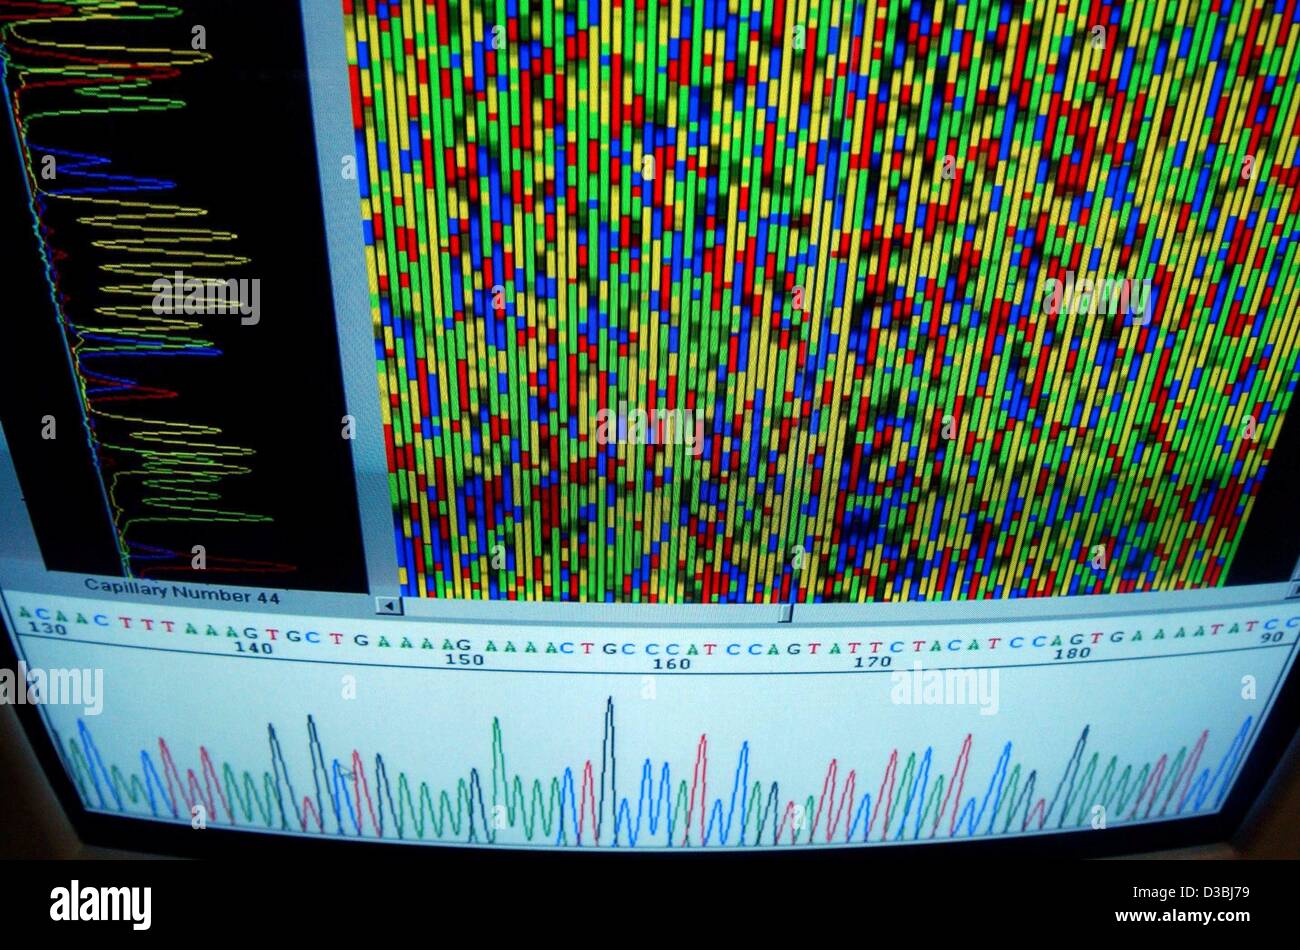 (Dpa) - der Monitor einen Sequenzer des Unternehmens AppliedBiosystems in Berlin, Deutschland, 15. April 2003 abgebildet. vor 50 Jahren, im Jahr 1953, beschrieben James Watson und Francis Crick berühmt die Struktur der DNA, das Molekül, das den genetischen Code trägt. Zwischen 15 und 27 April, die moderne exhibitio Stockfoto